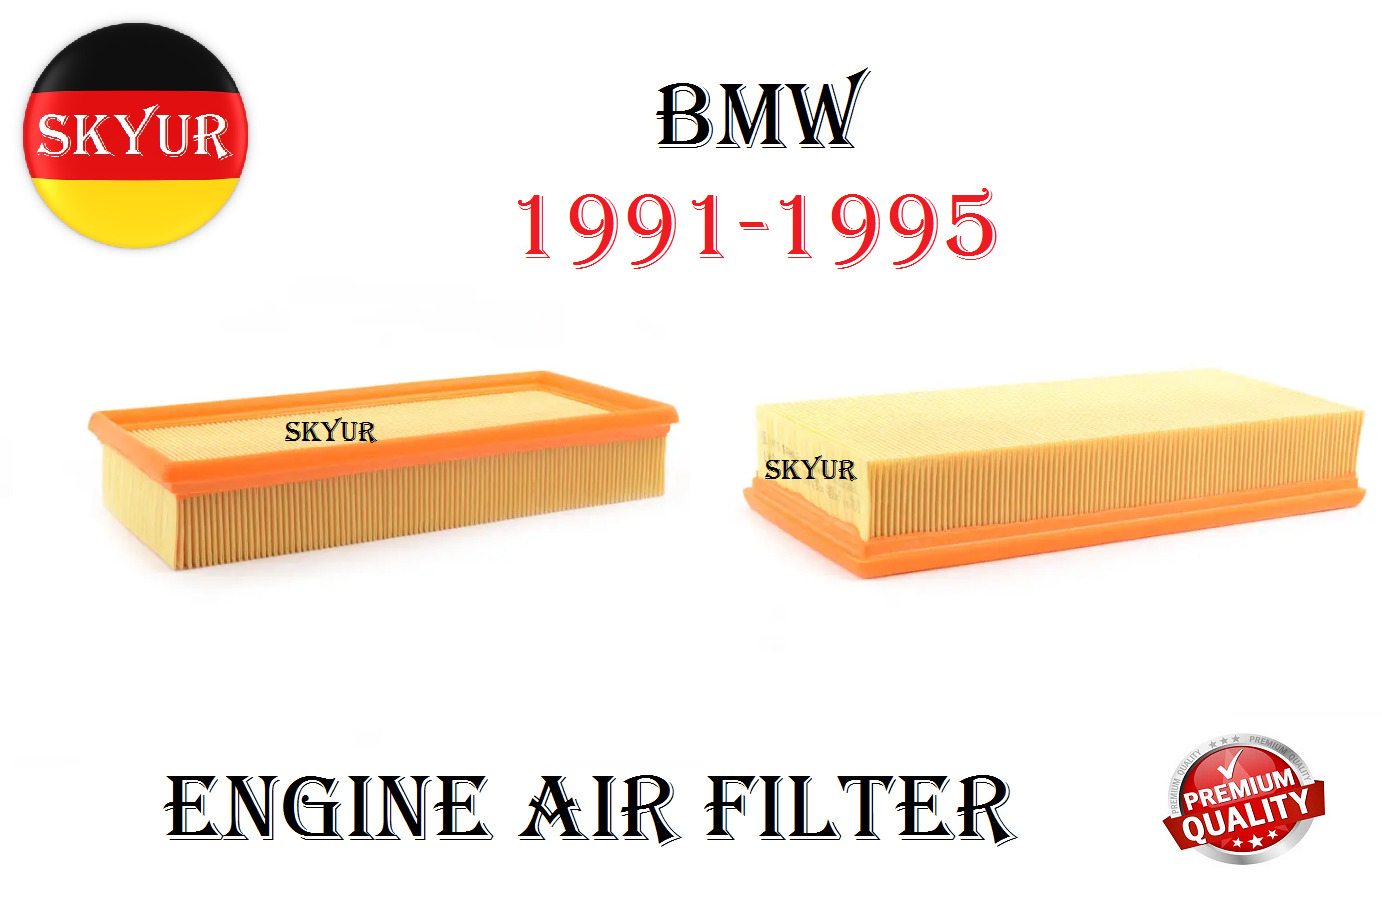 Engine Air Filter For 1991-1995 BMW E34 525i, 525iT, M5 Premium Quality